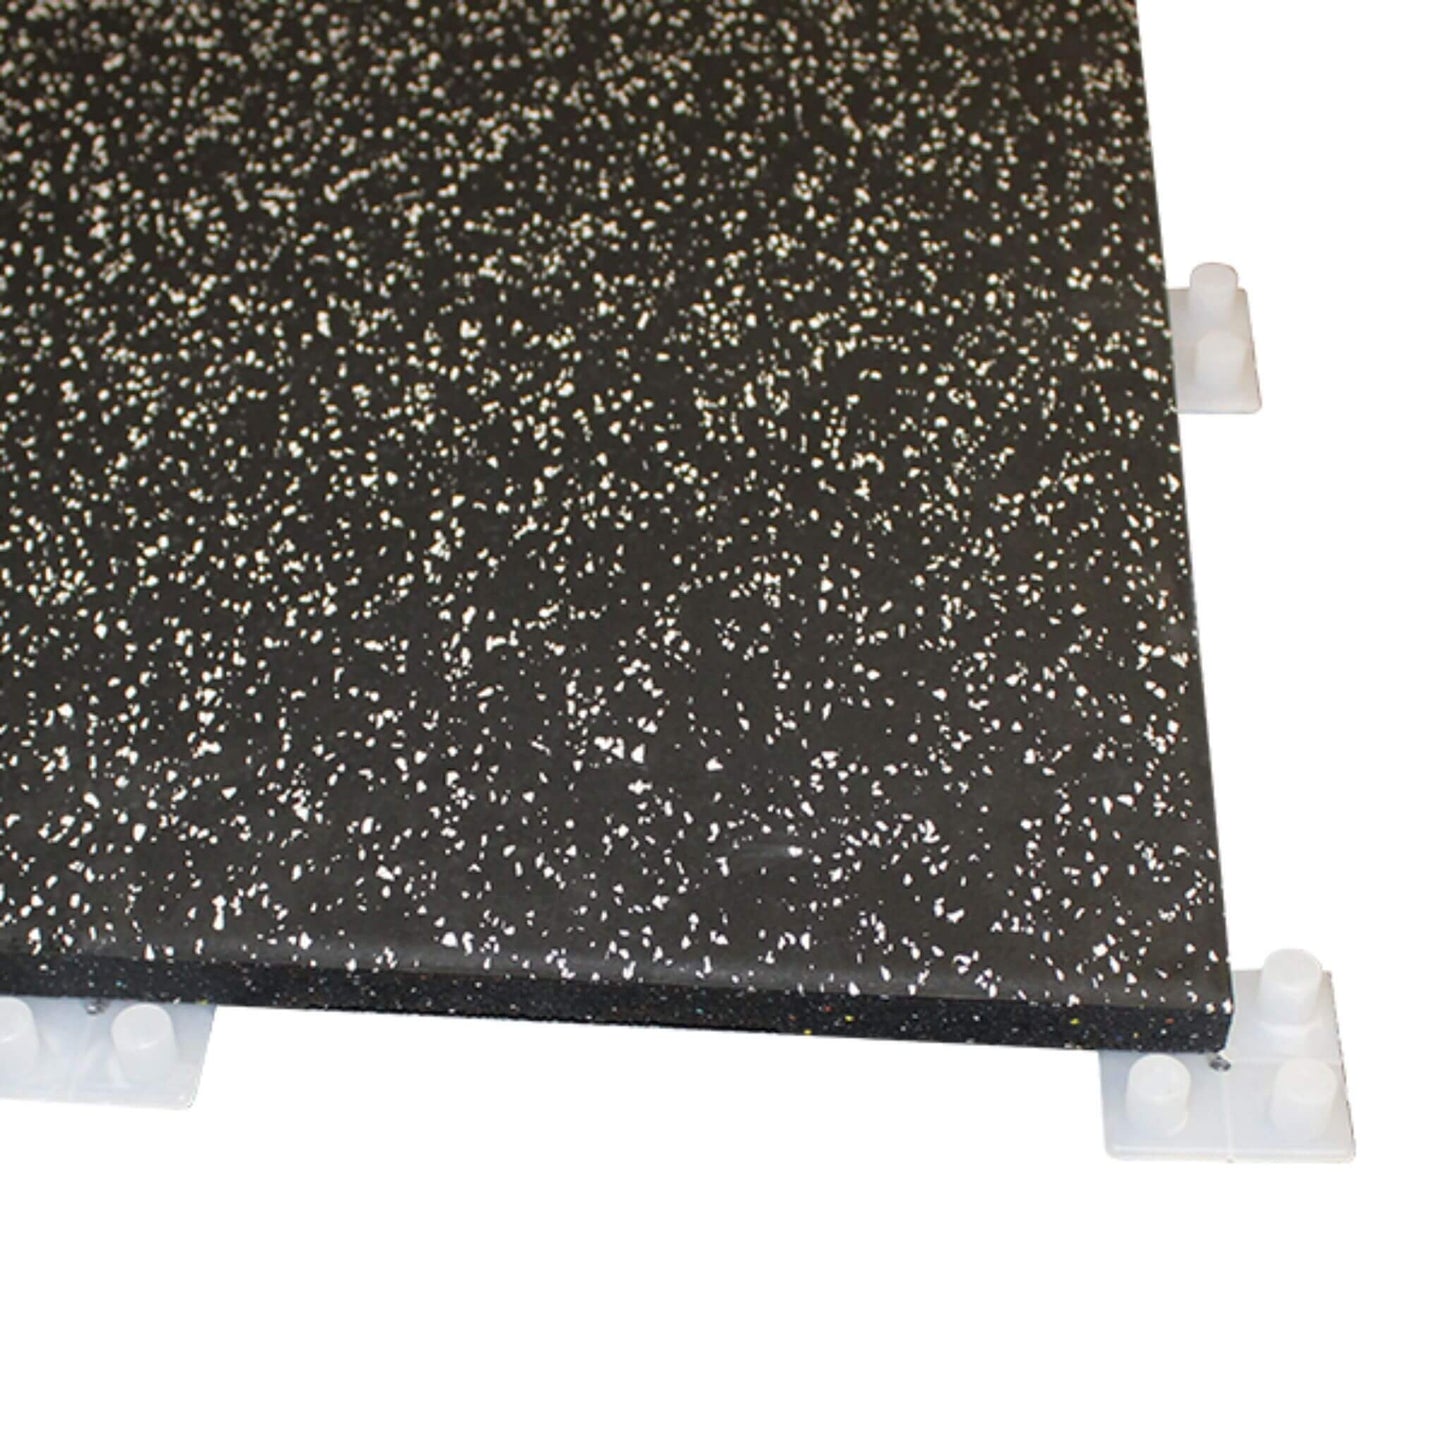 20mm Premium Black Rubber Gym Floor Tile (1m x 0.5m / Grey Fleck) connectors